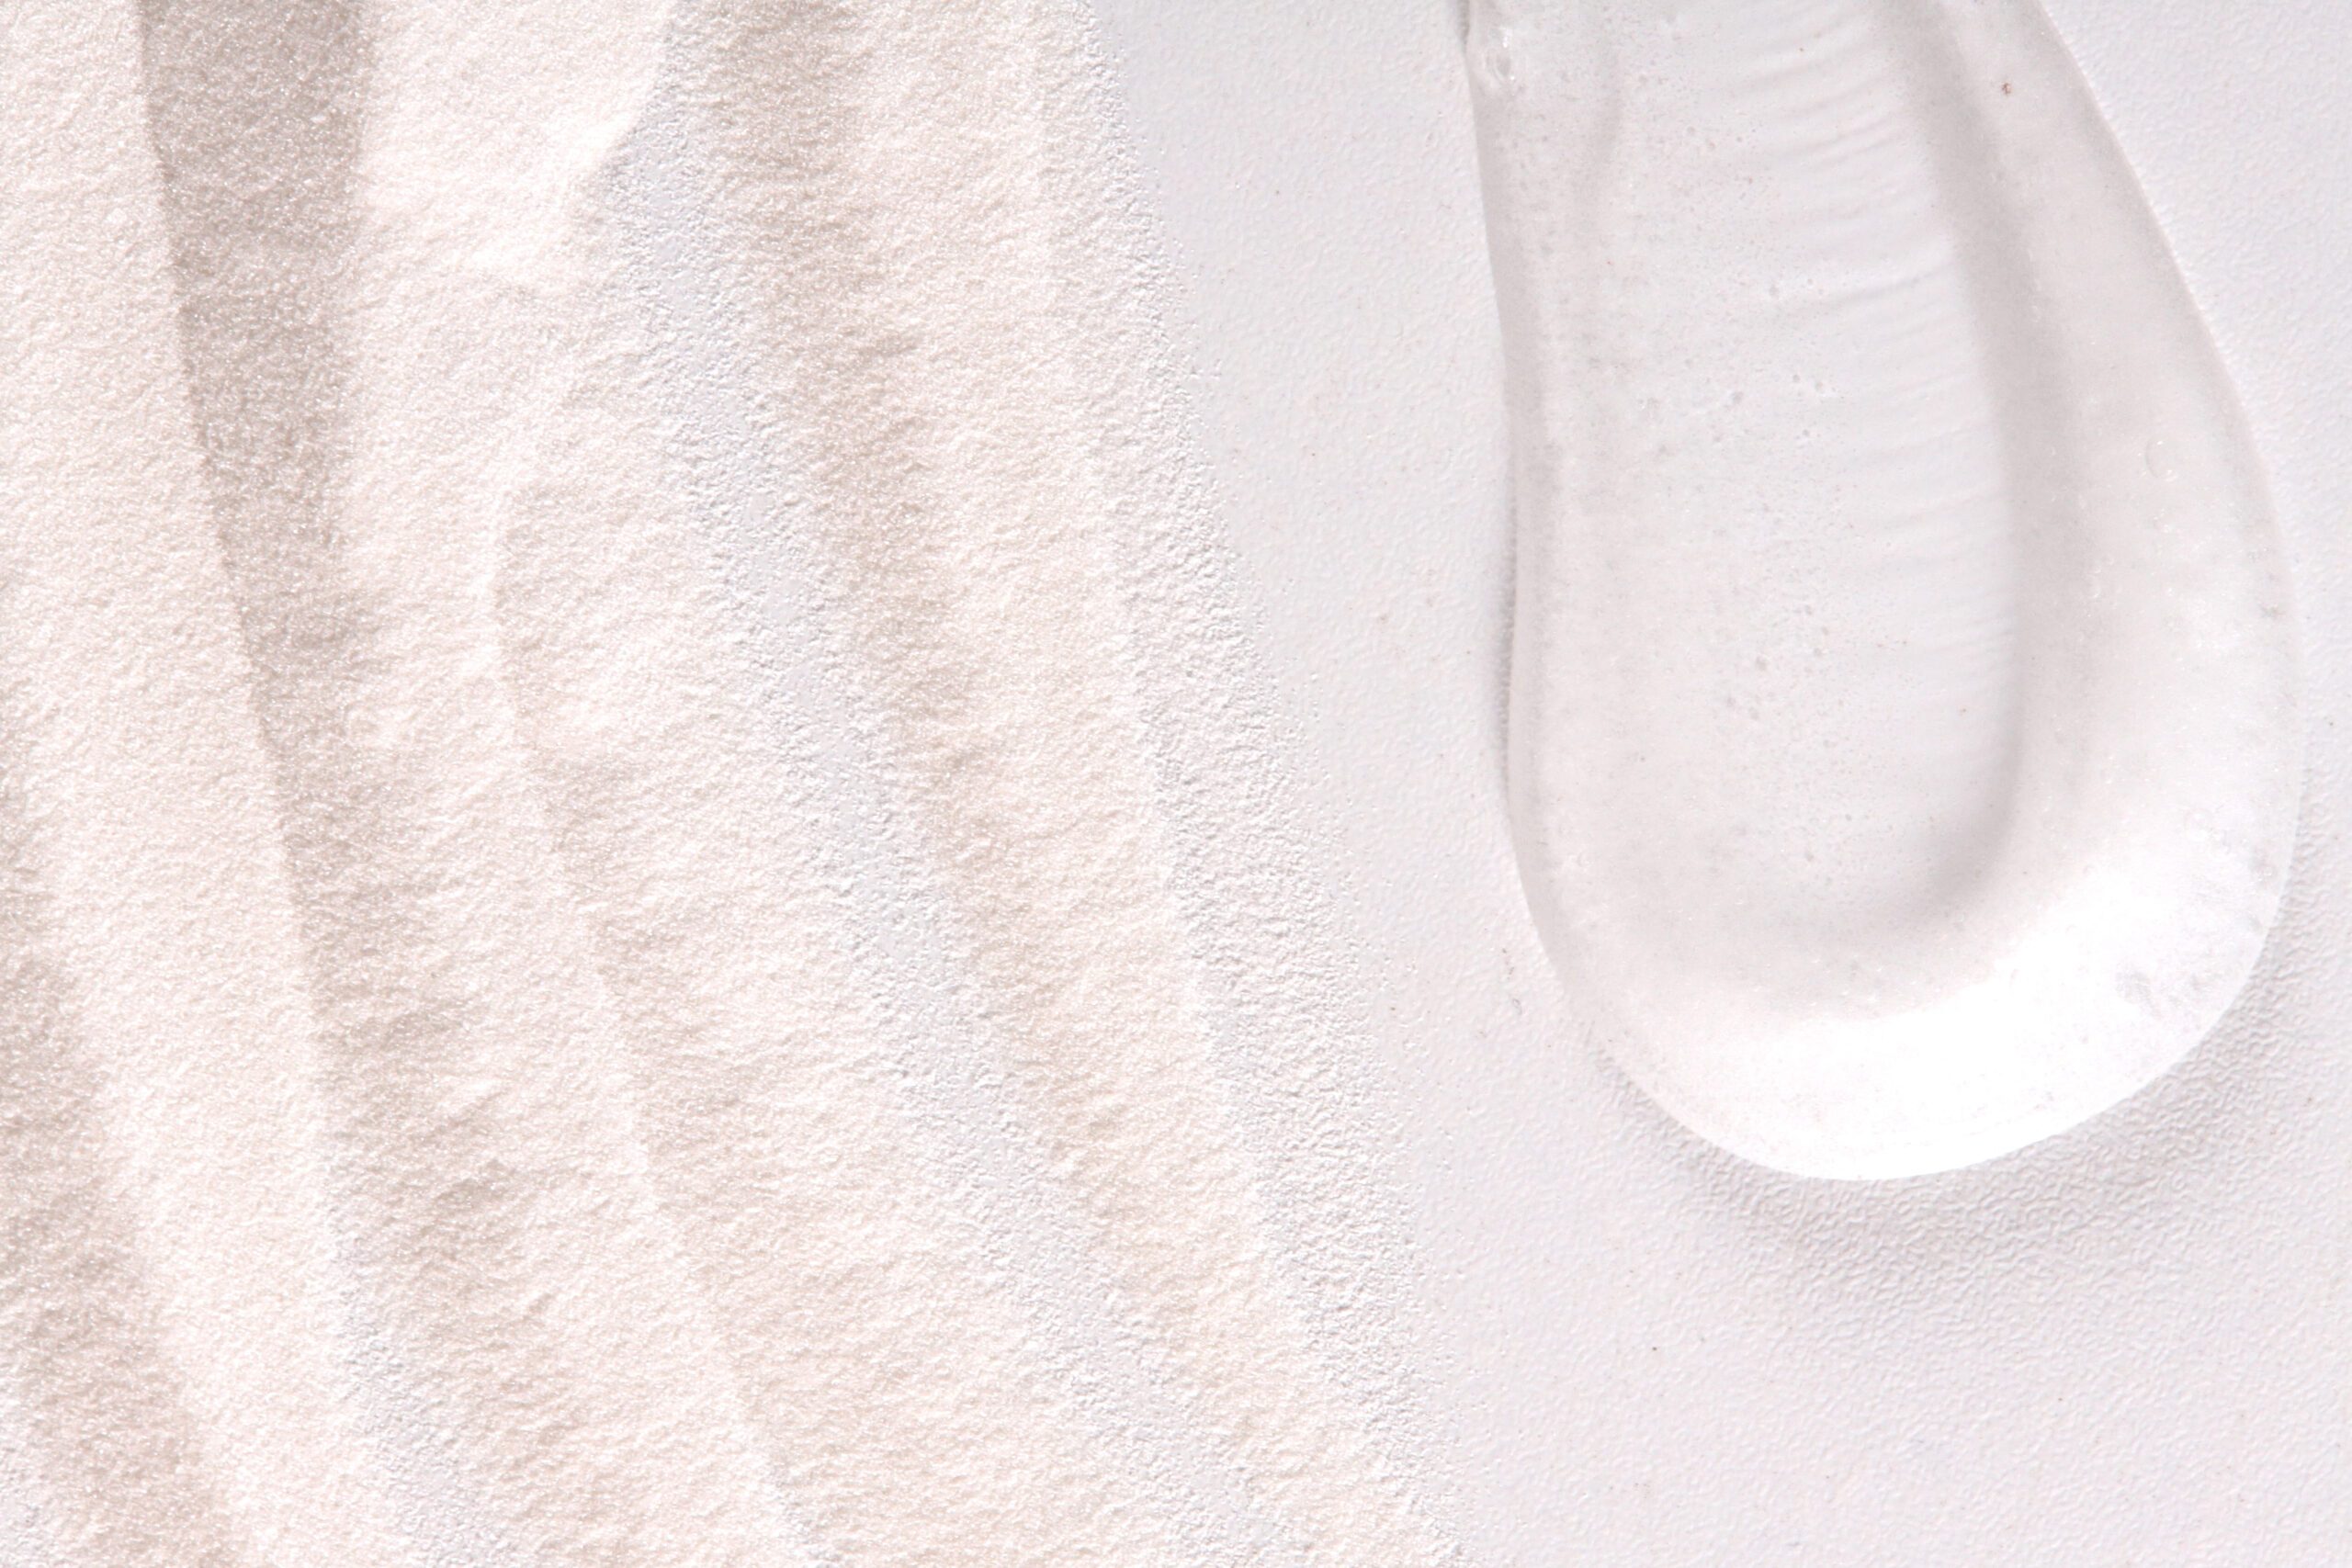 Lessonia est un fabricant d'exfoliants  pour développer des produits cosmétiques et des soins exfoliants comme des gommages. 